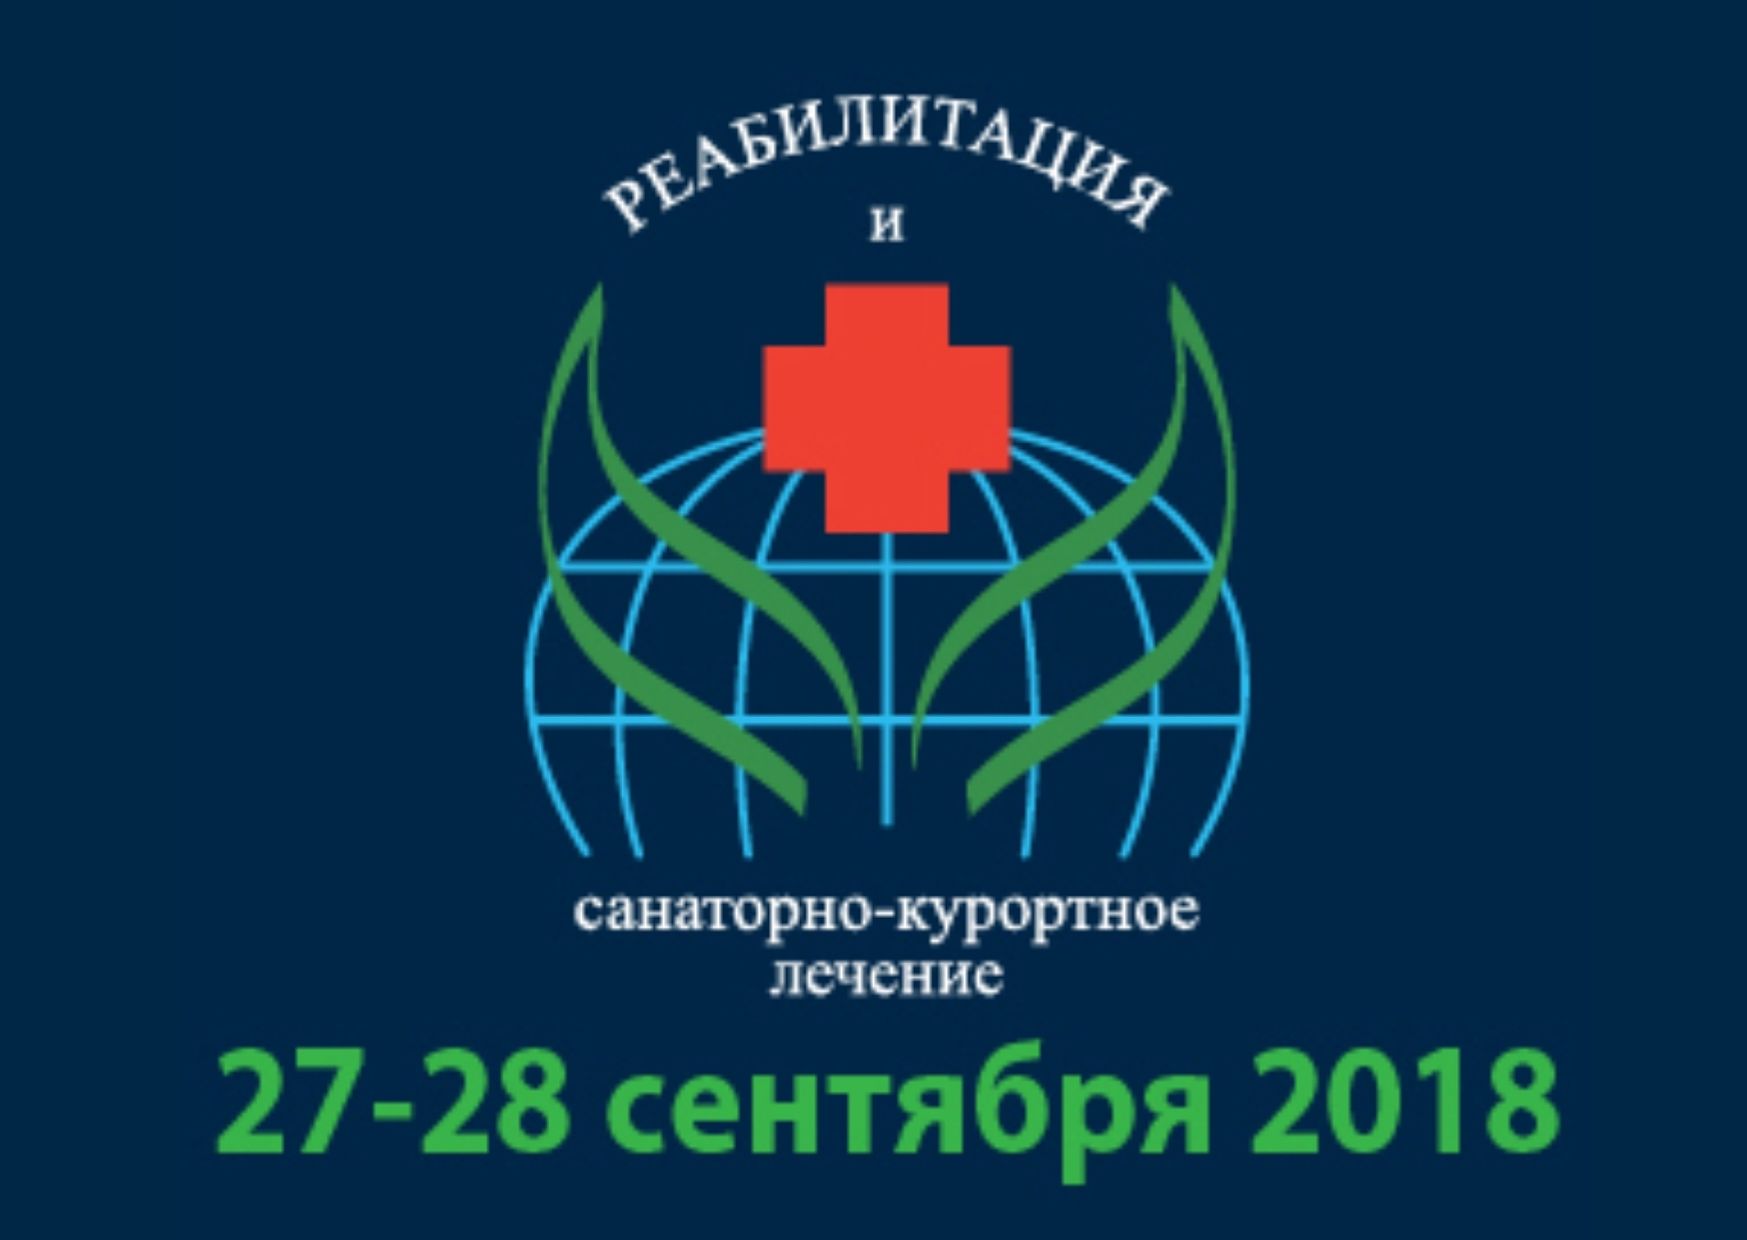 Завершился XVI Международный конгресс «Реабилитация и санаторно-курортное лечение»